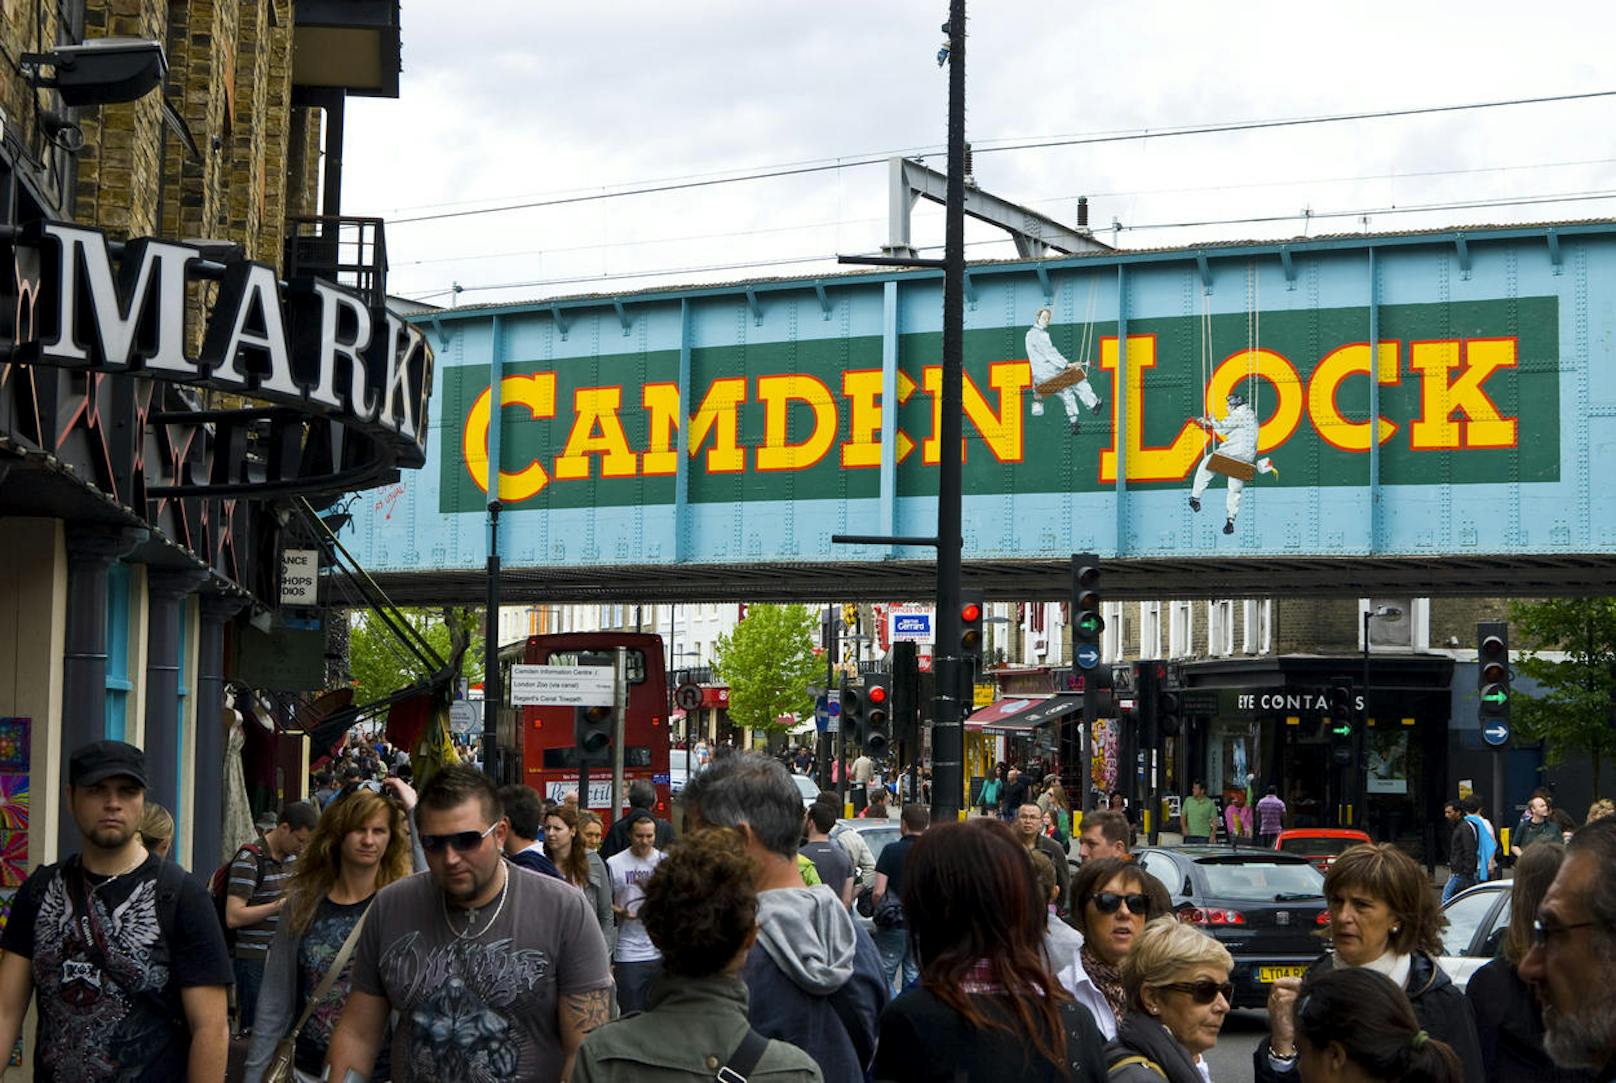 Camden Lock Market - auf dem Camden Lock Market in London kann man seit über 30 Jahren Kleidung, Möbel, Bücher usw. für wenig Geld erstehen. Wer einmal eine kleine Pause braucht kann in einem der kleinen Pubs und Restaurants das Markttreiben beobachten. U-Bahn-Stationen in unmittelbarer Nähe sind "Camden Town" und "Chalk Farm".